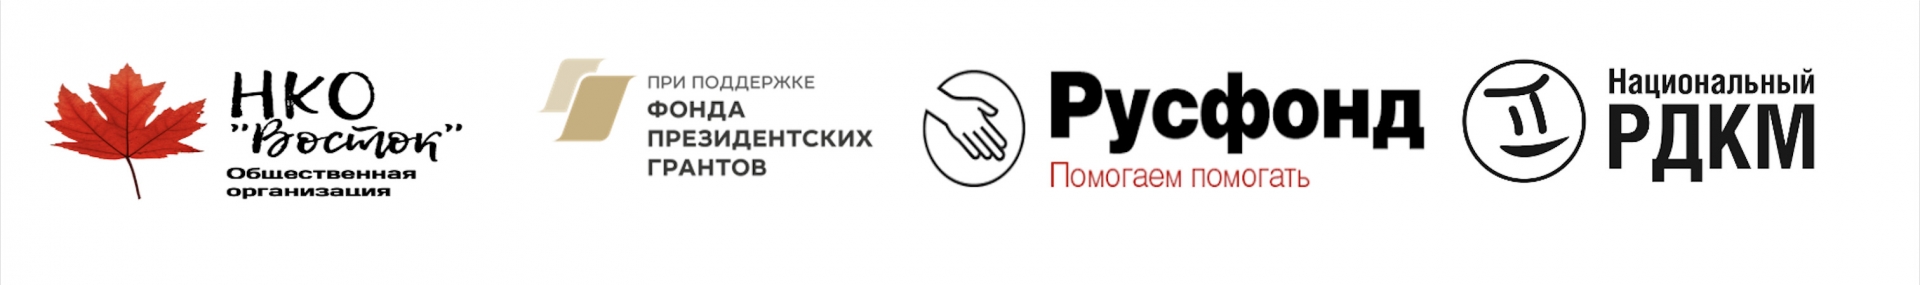 В Приморском крае поддержат проект развития донорства костного мозга